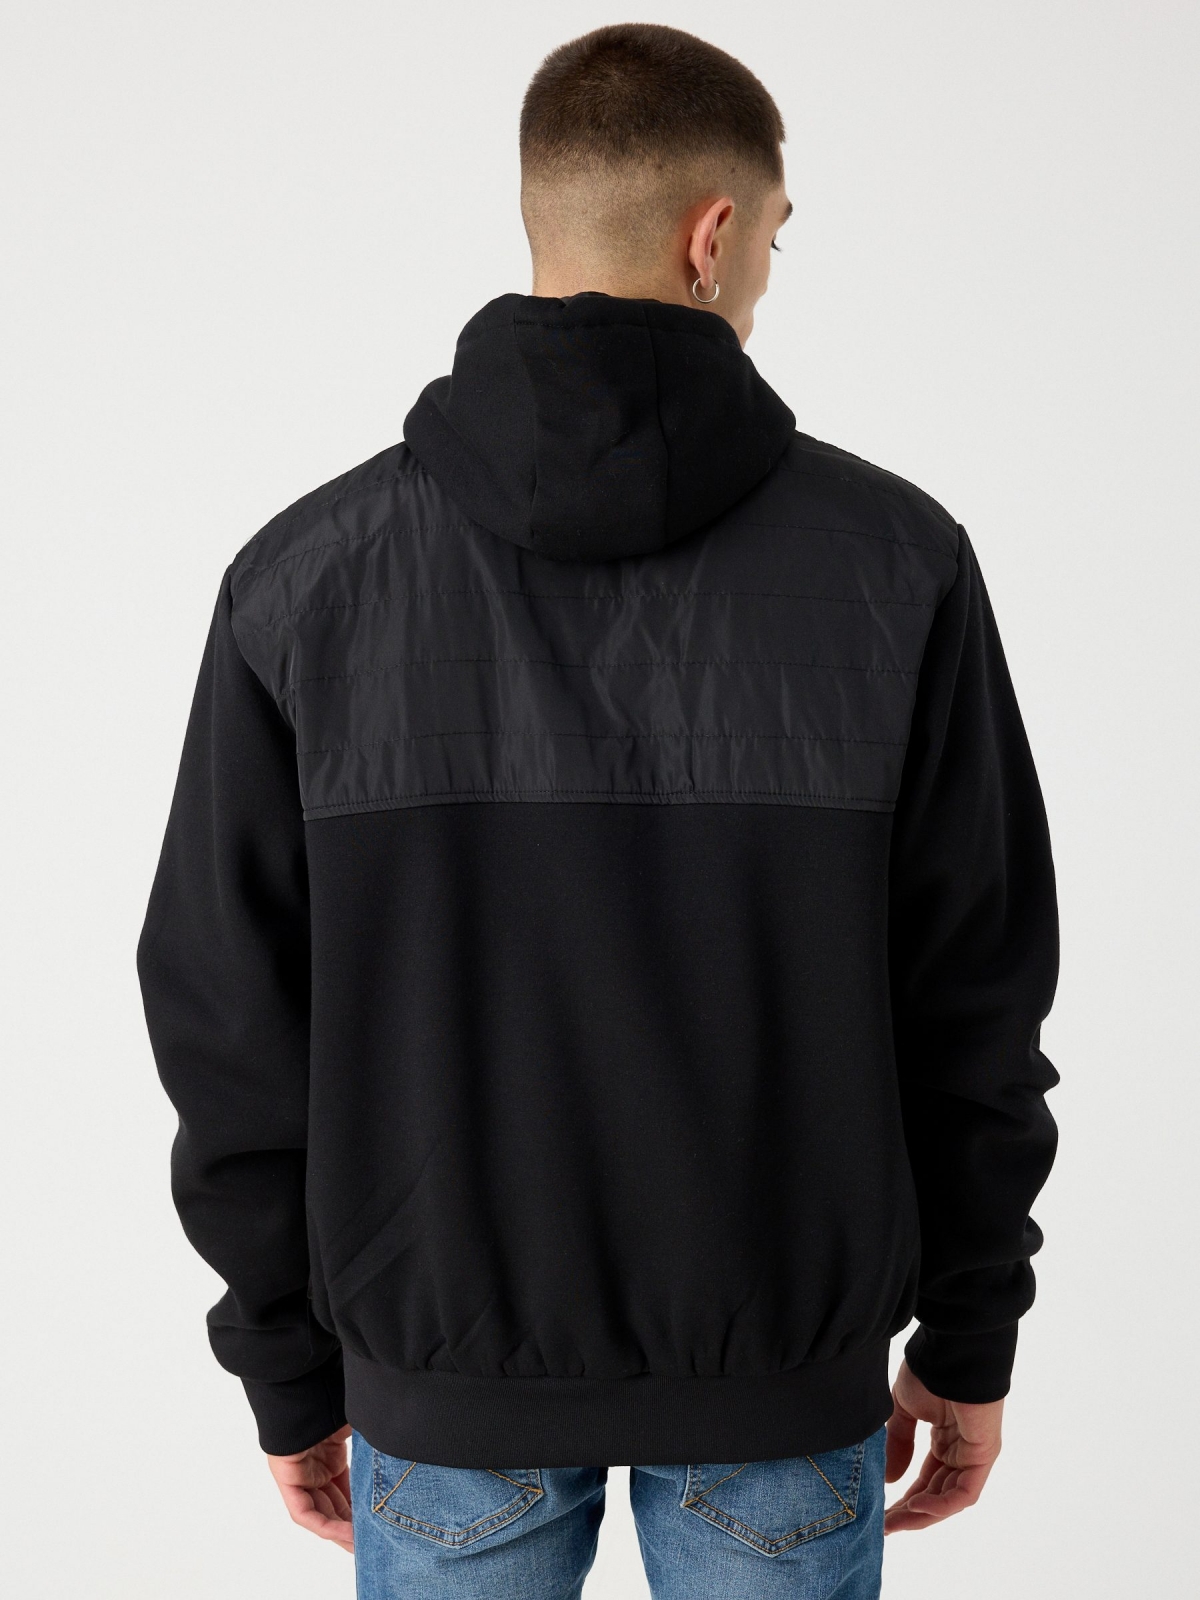 Jaqueta combinada com capuz preto vista meia traseira